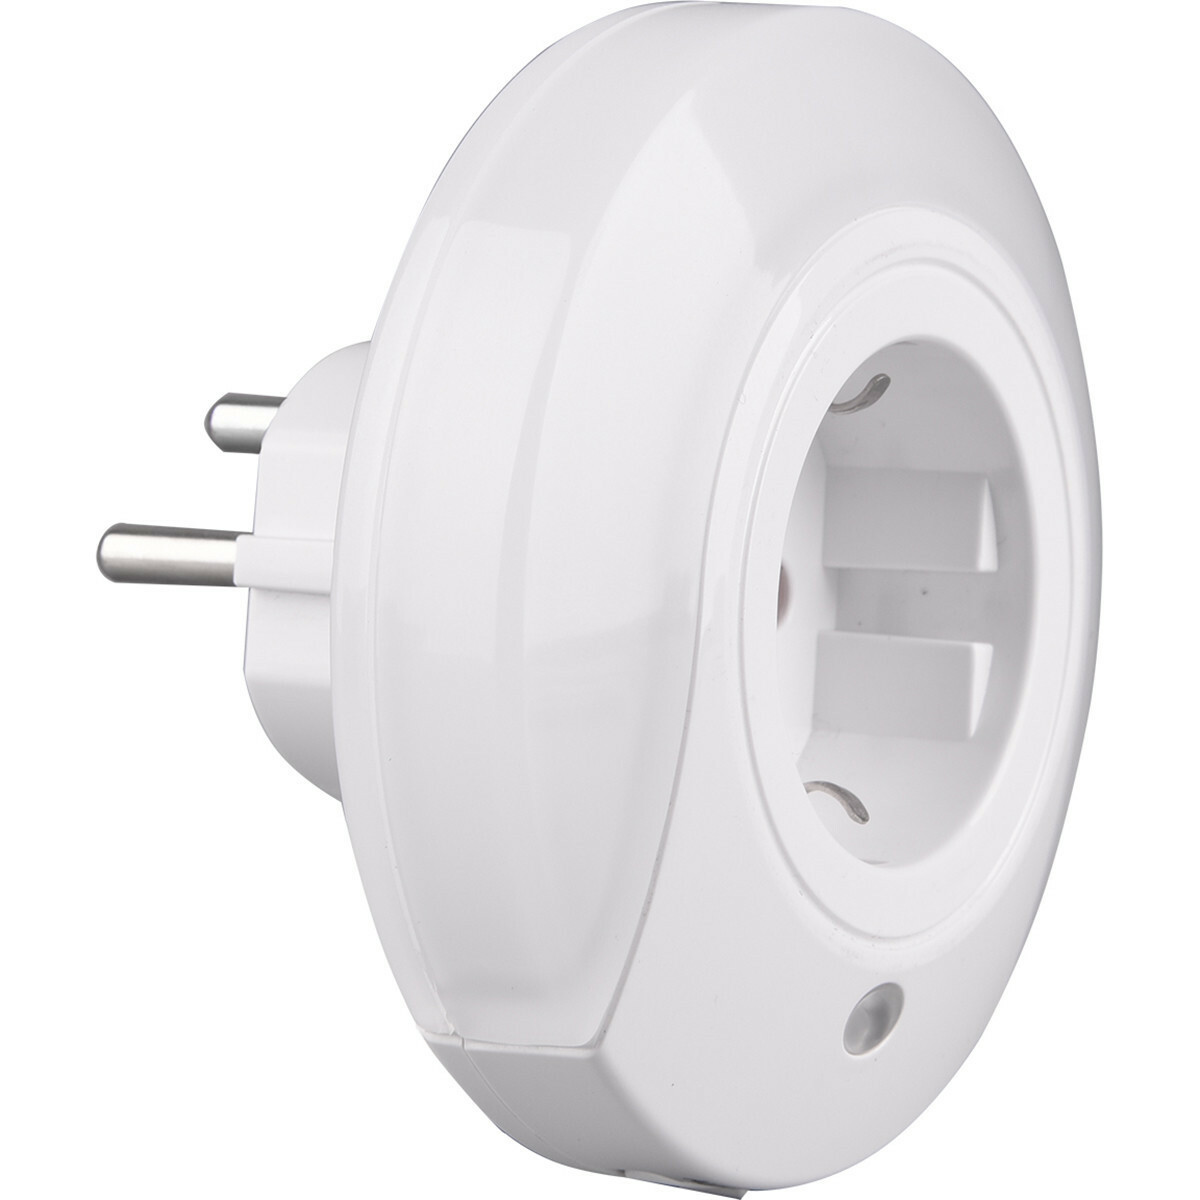 Stekkerlamp - Stekkerspot met Stopcontact - Trion Mirloni - Dag en Nacht Sensor - 0.4W - Warm Wit 3000K - Rond - Mat Wit Kunststof | BES LED